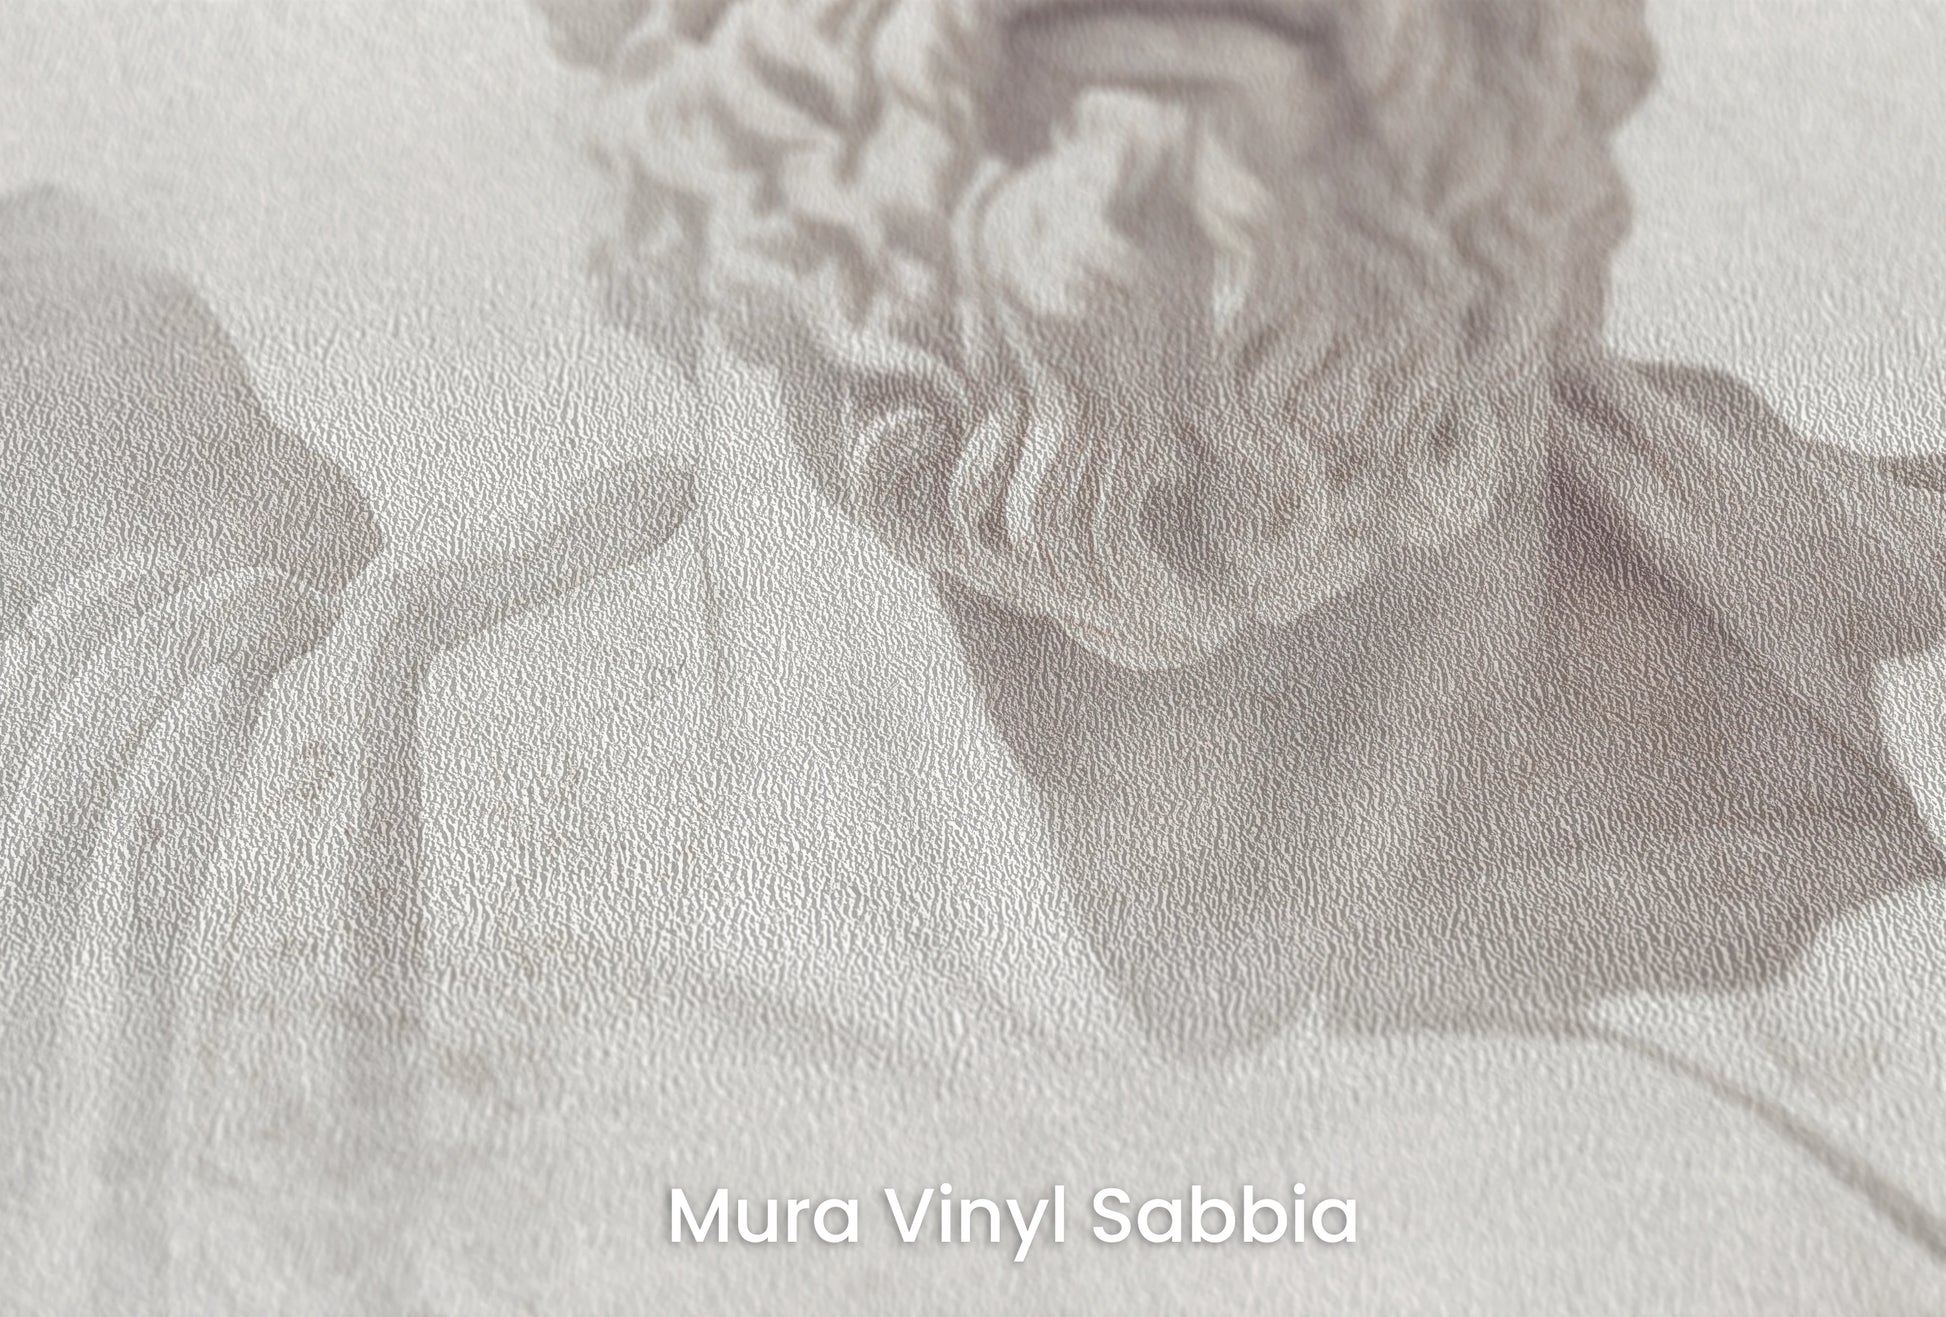 Zbliżenie na artystyczną fototapetę o nazwie Stoic Wisdom Revisited na podłożu Mura Vinyl Sabbia struktura grubego ziarna piasku.